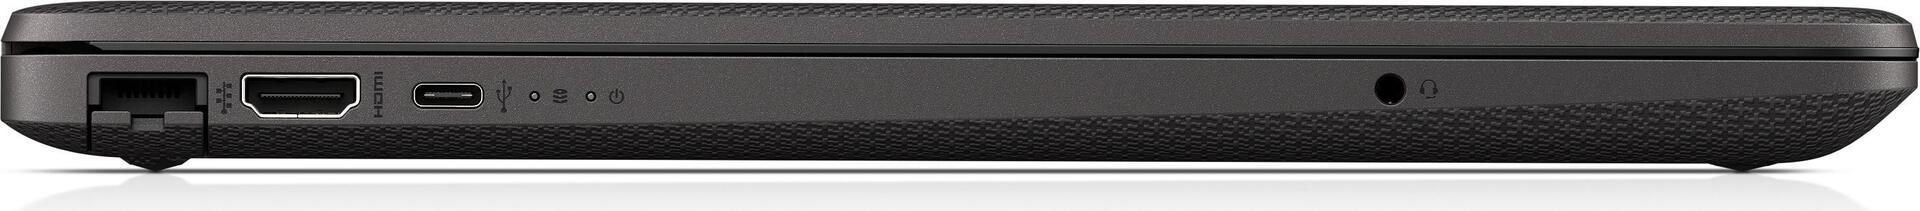 HP 250 G8 DDR4-SDRAM Notebook 39,6 cm (15.6" ) 1920 x 1080 Pixel Intel® Core™ i7 Prozessoren der 10. Generation 16 GB 512 GB SSD Windows 10 Home Schwarz (34N40ES)